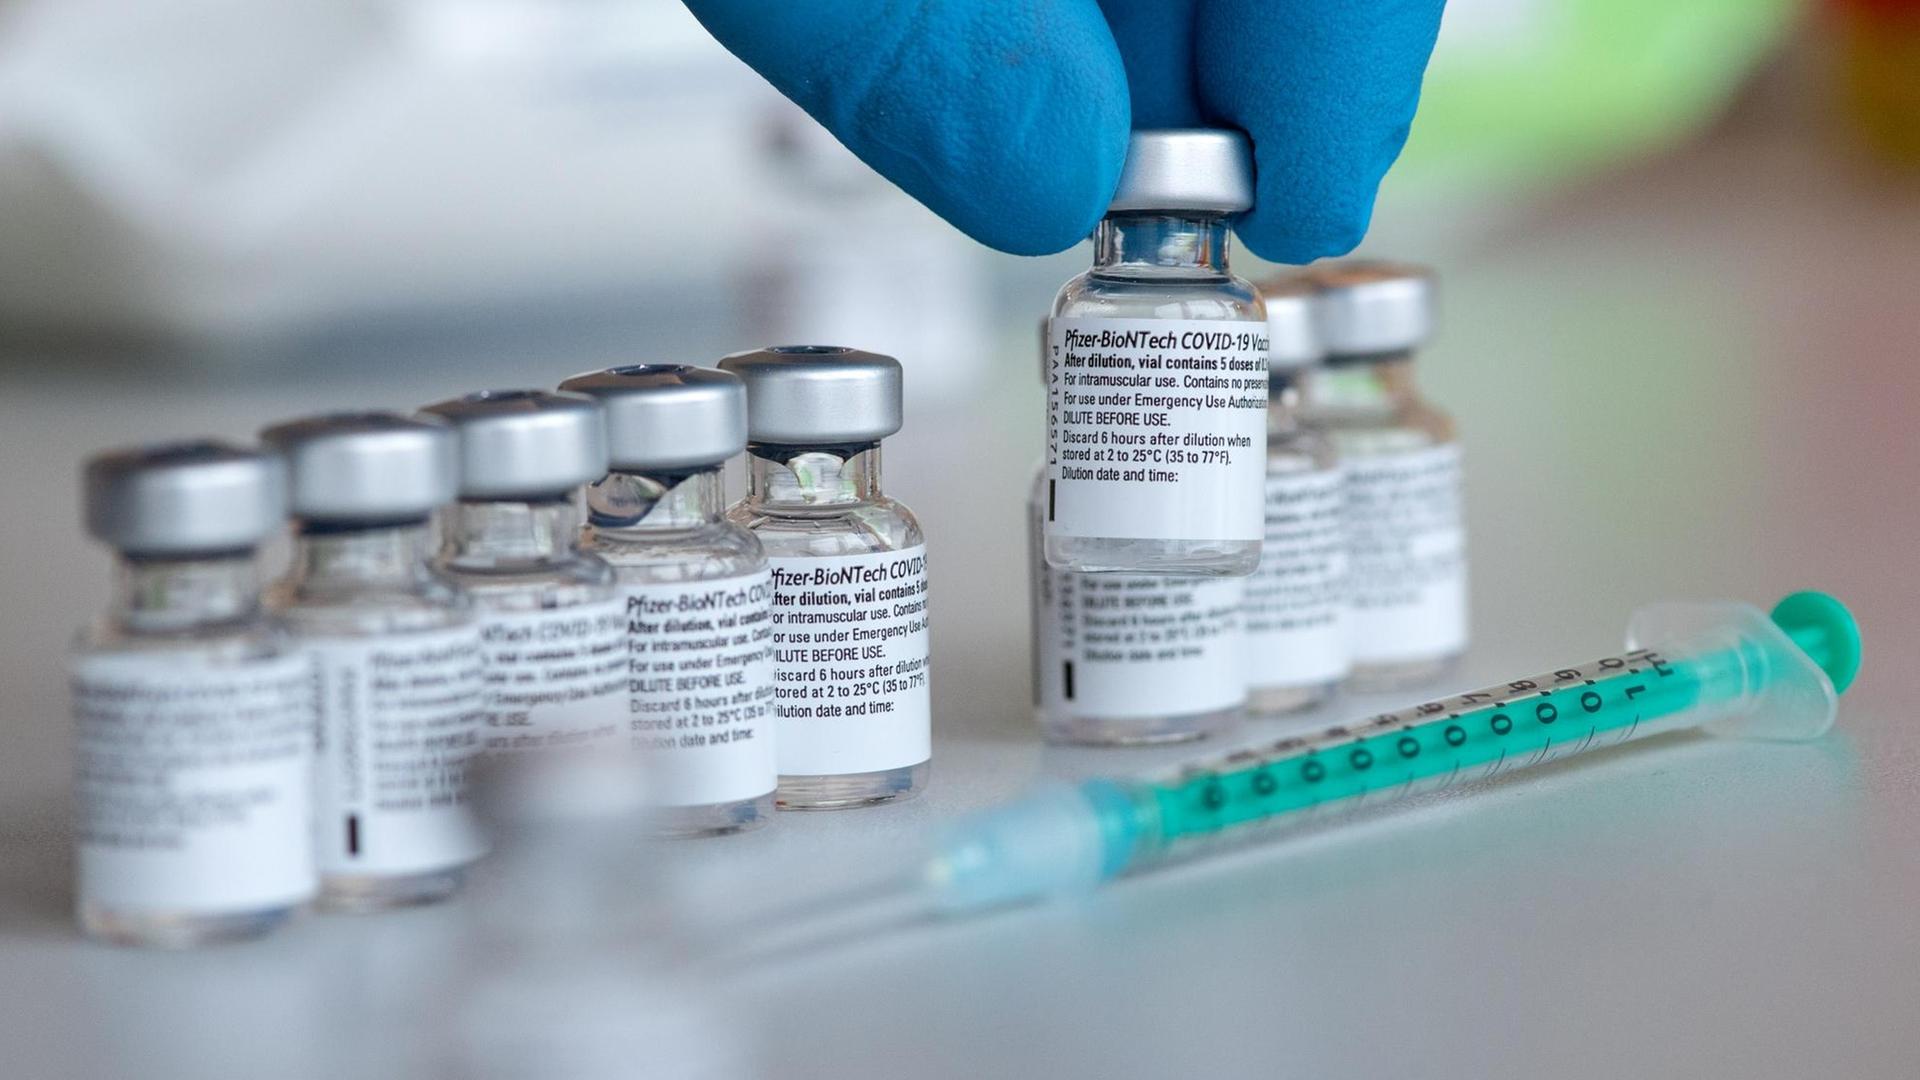 Leere Ampullen des Impfstoffs von Biontech/Pfizer gegen das Corona-Virus SARS-CoV-2 stehen in einem Impfzentrum nach der Vorberietung der Spritzen auf einem Tisch.